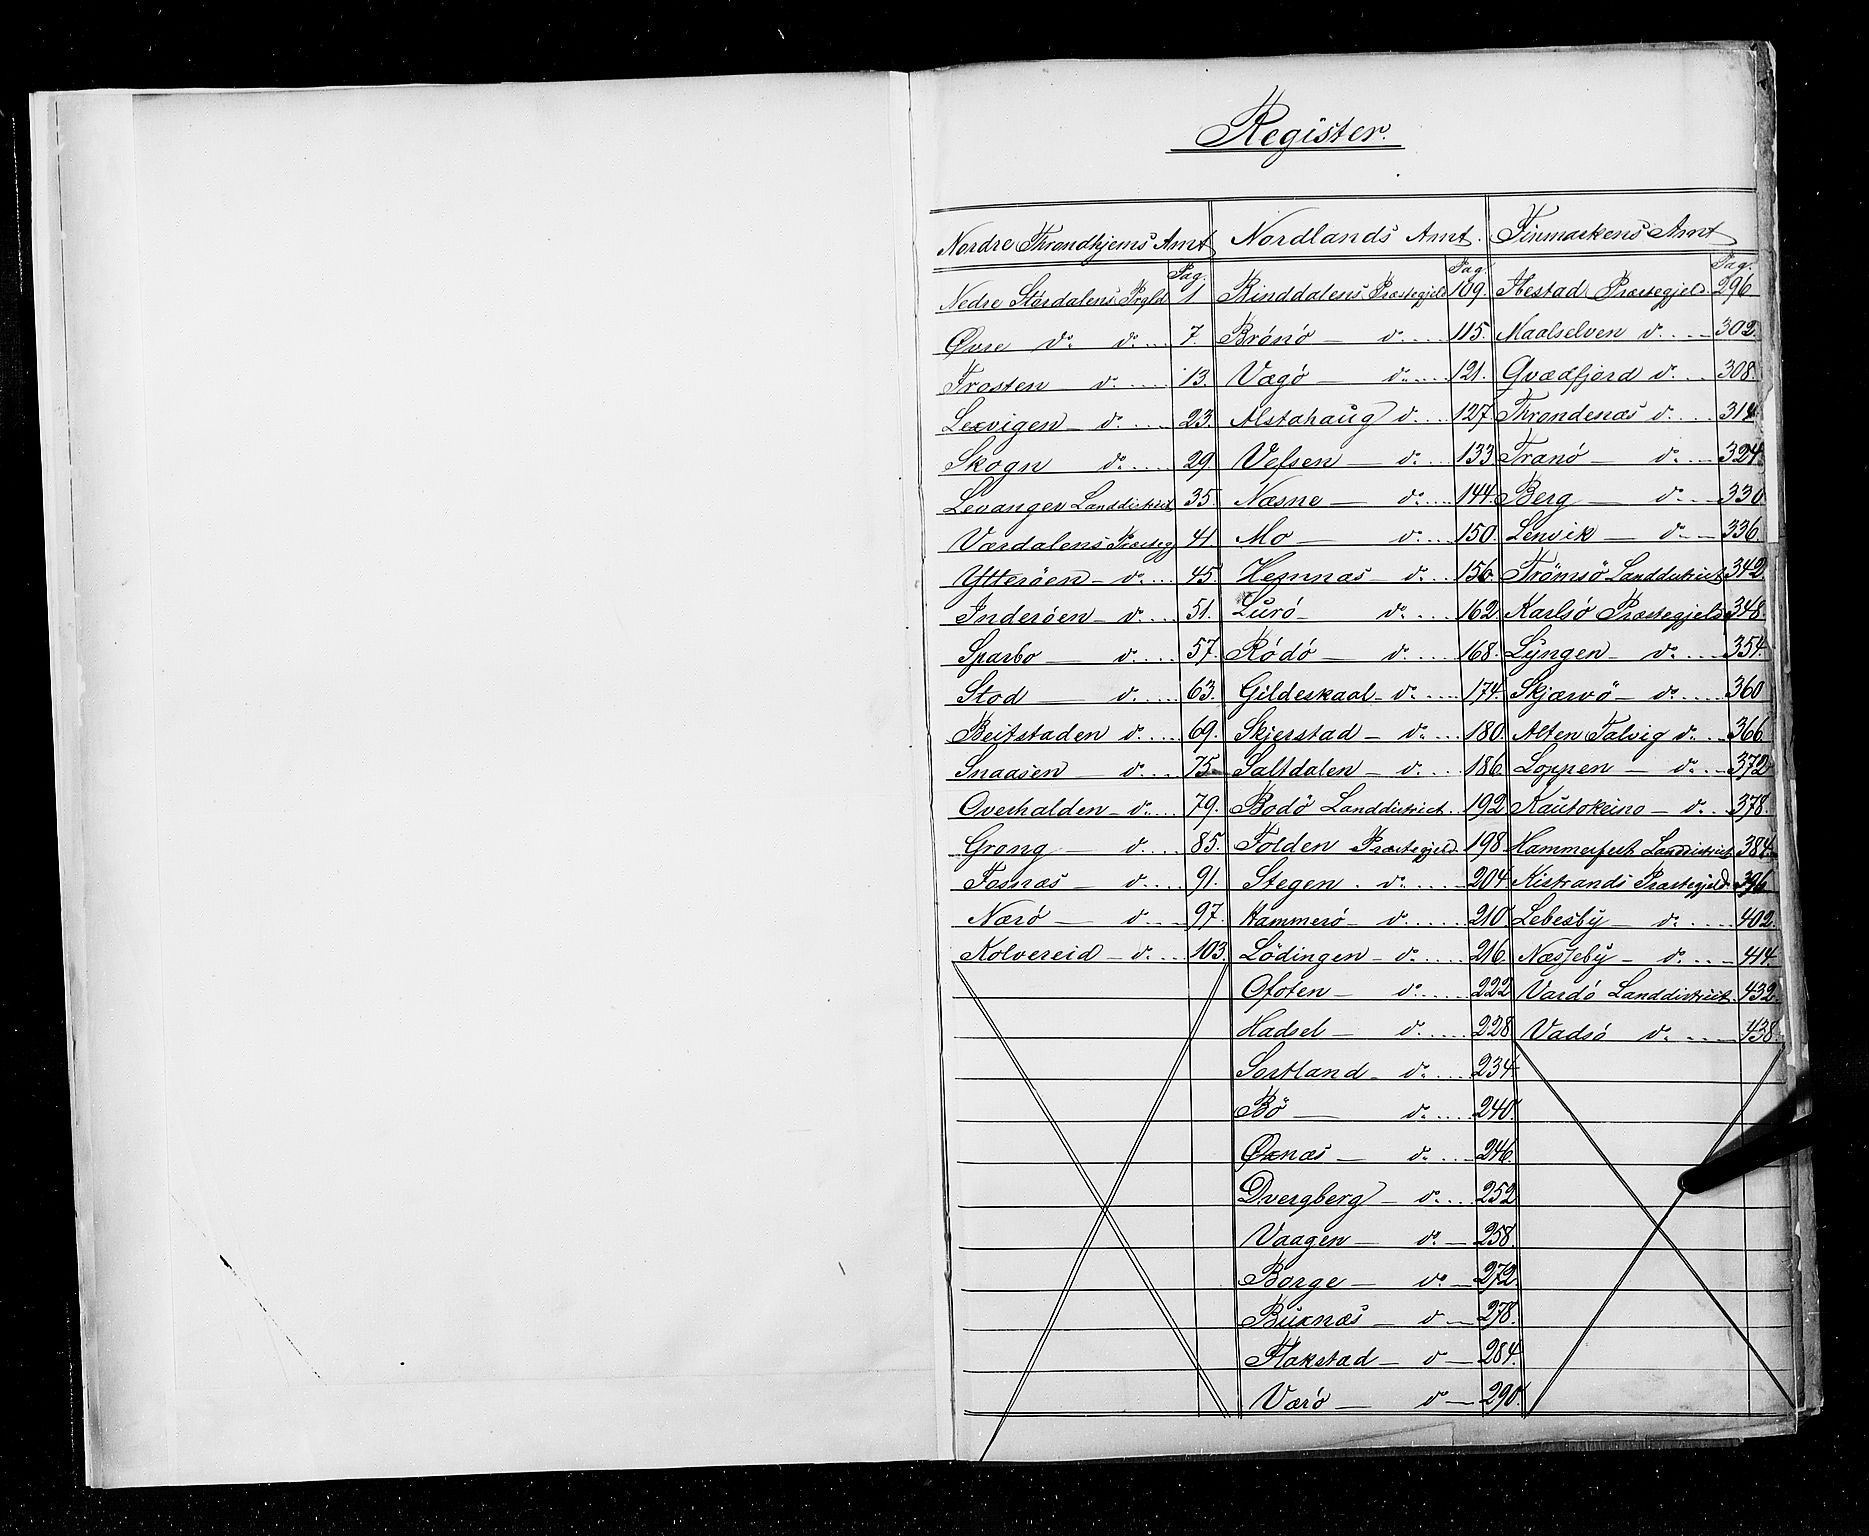 RA, Census 1855, vol. 6A: Nordre Trondhjem amt og Nordland amt, 1855